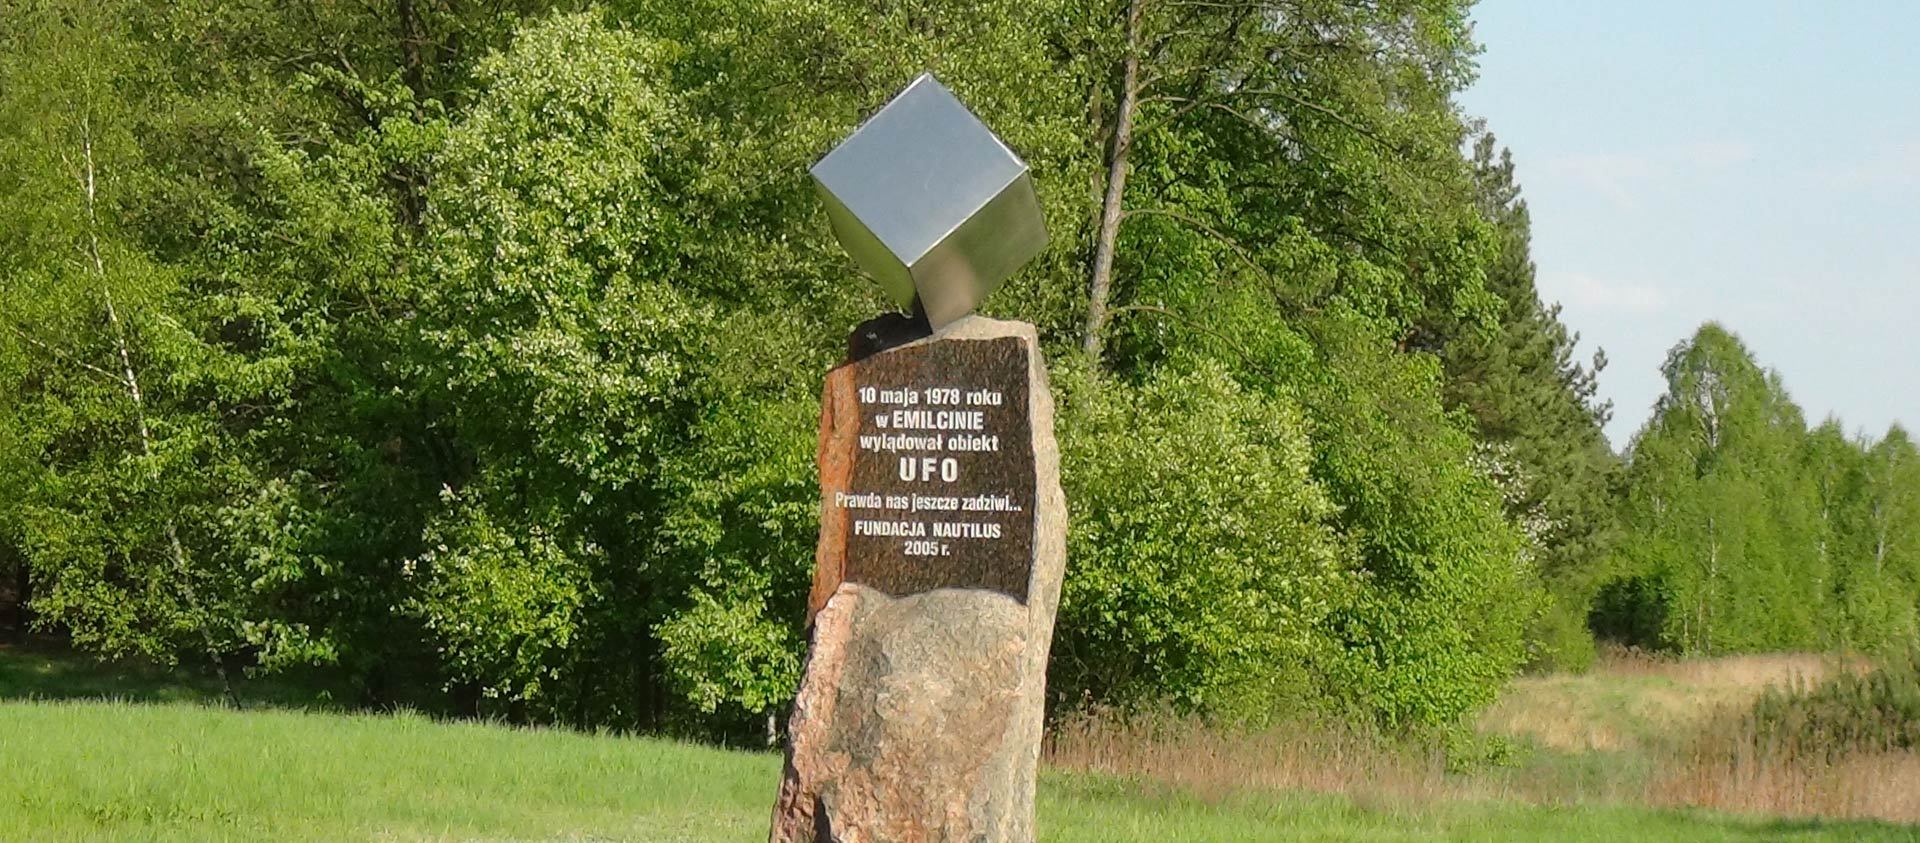 Andrzej Fogtt, Pomnik UFO, Emilcin, październik 2005 pomnik